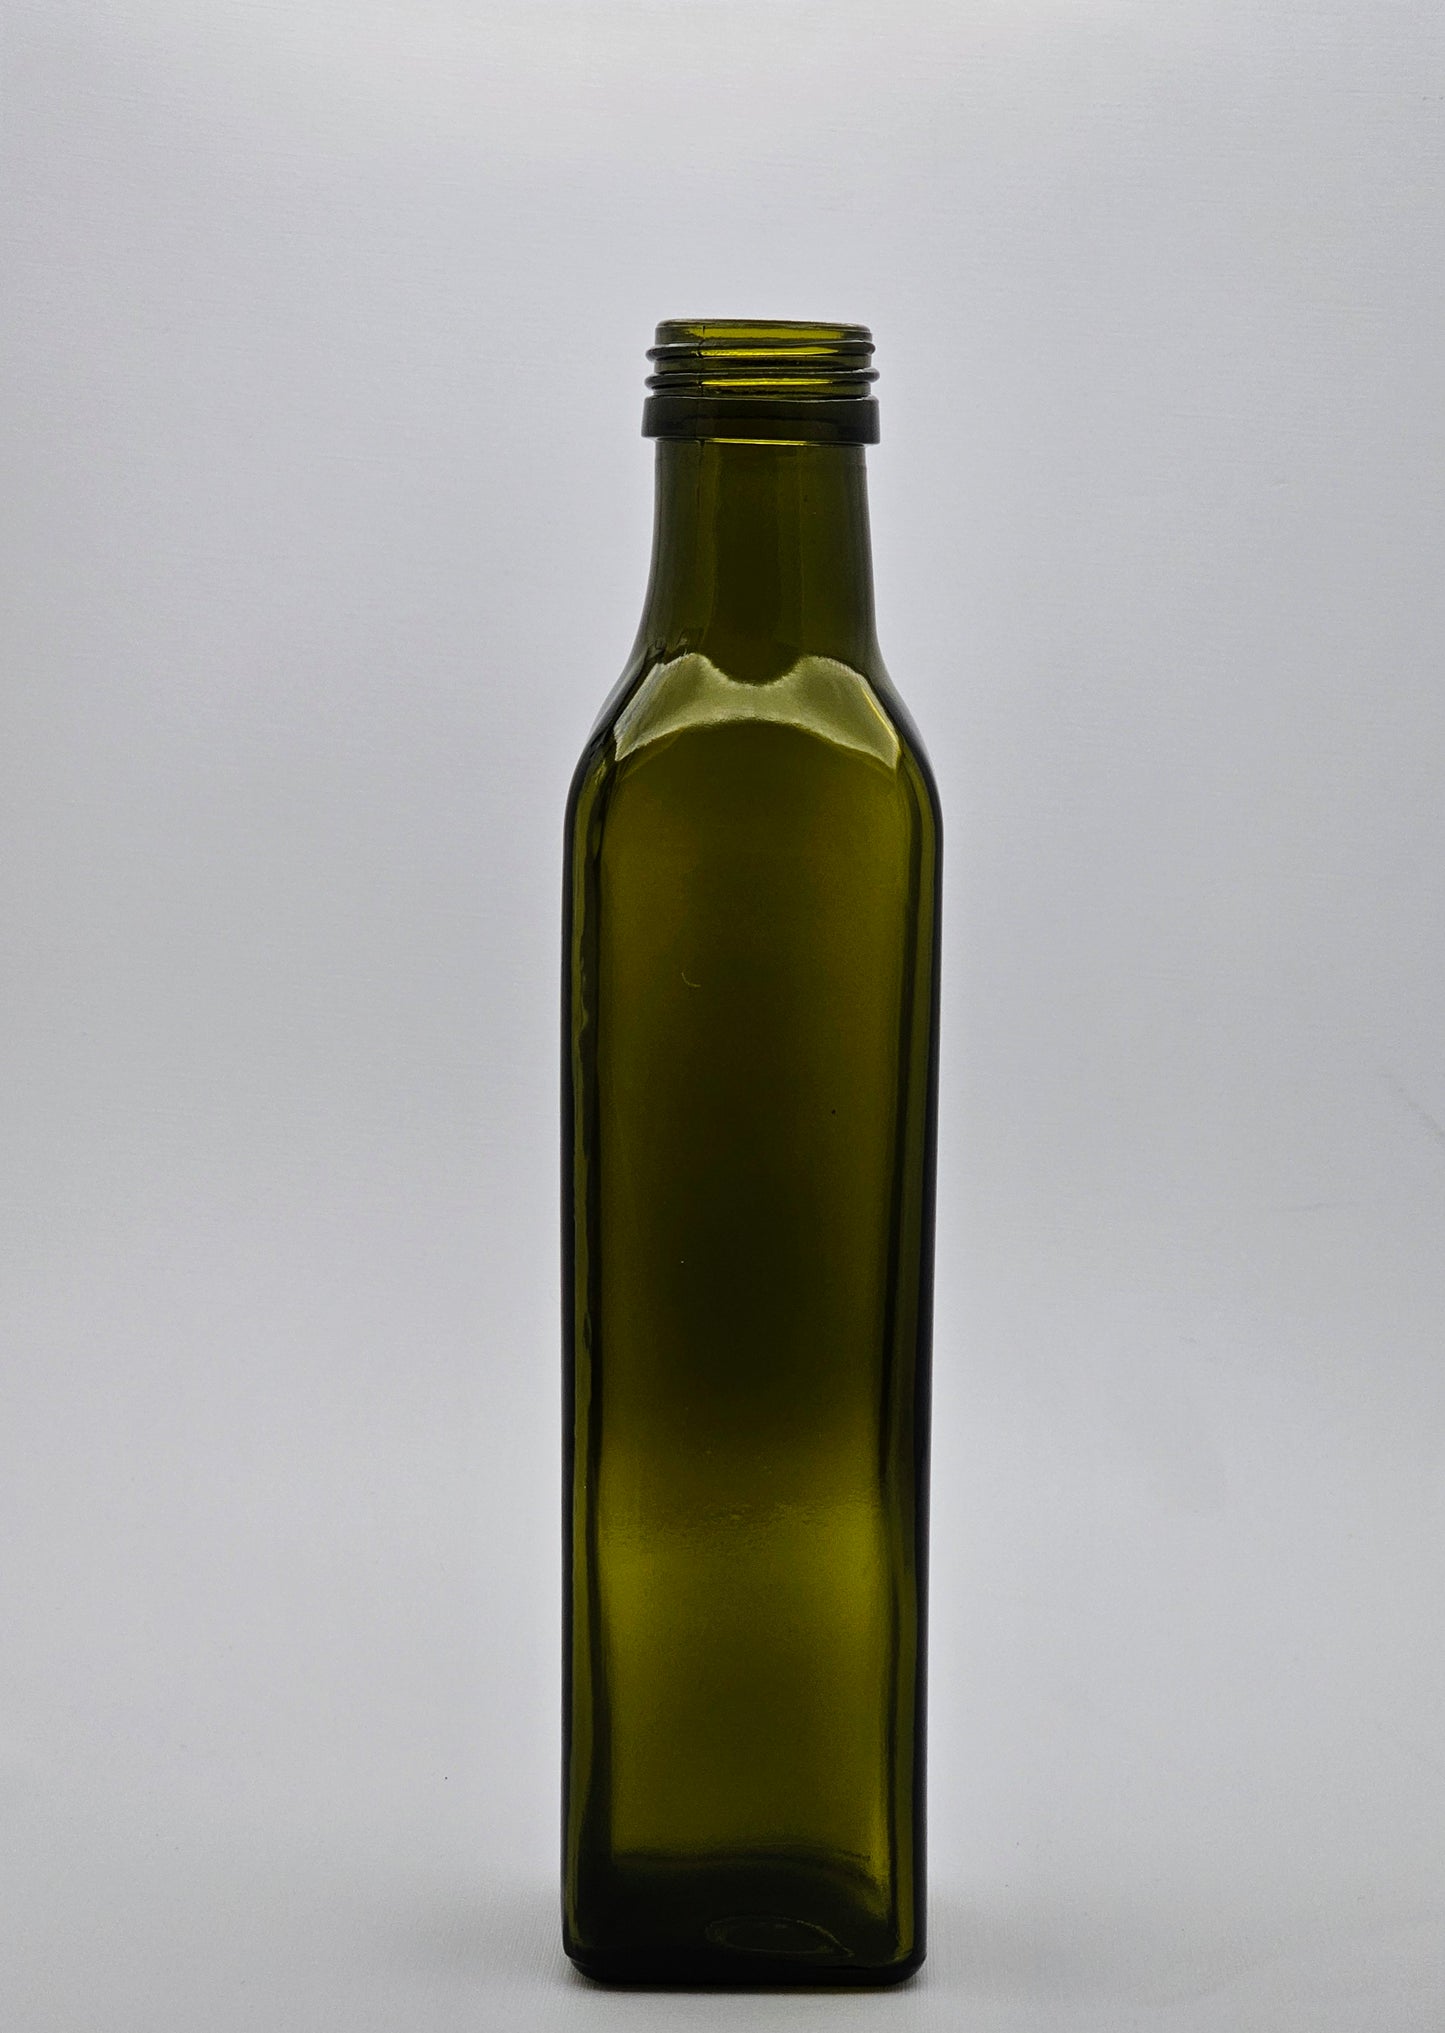 250ml Antique Green Marasca Glass Bottle - 40 Bottles and Olea Pourer Caps Per Carton Unit Cost - $1.45c each (Bottle/Capcombo)